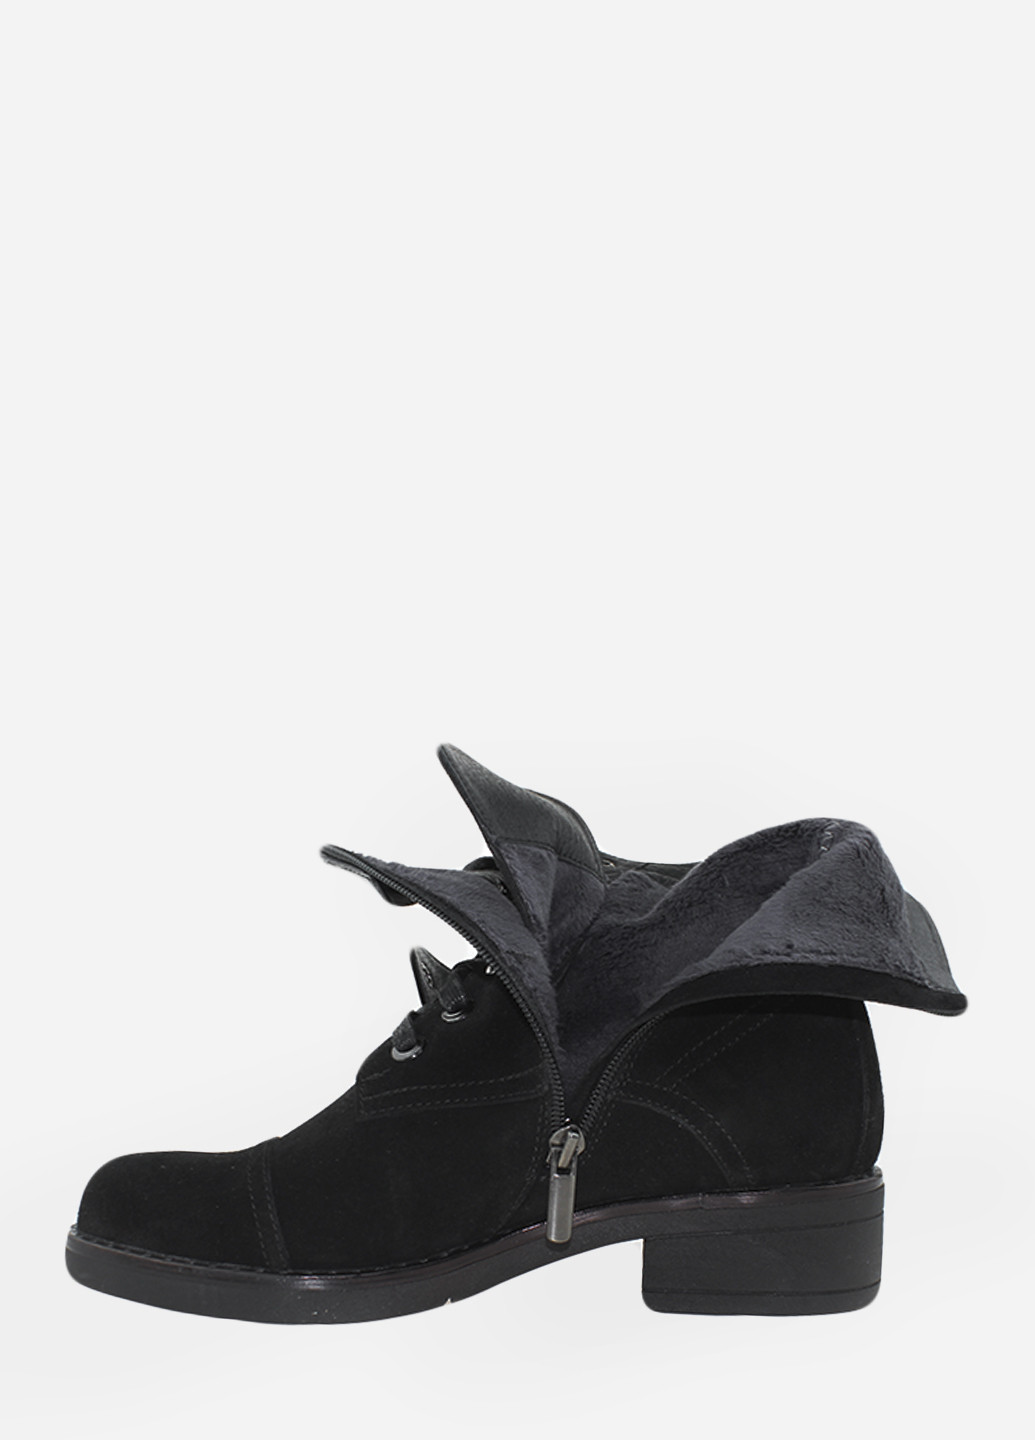 Осенние ботинки rd0900-11 черный Darini из натуральной замши